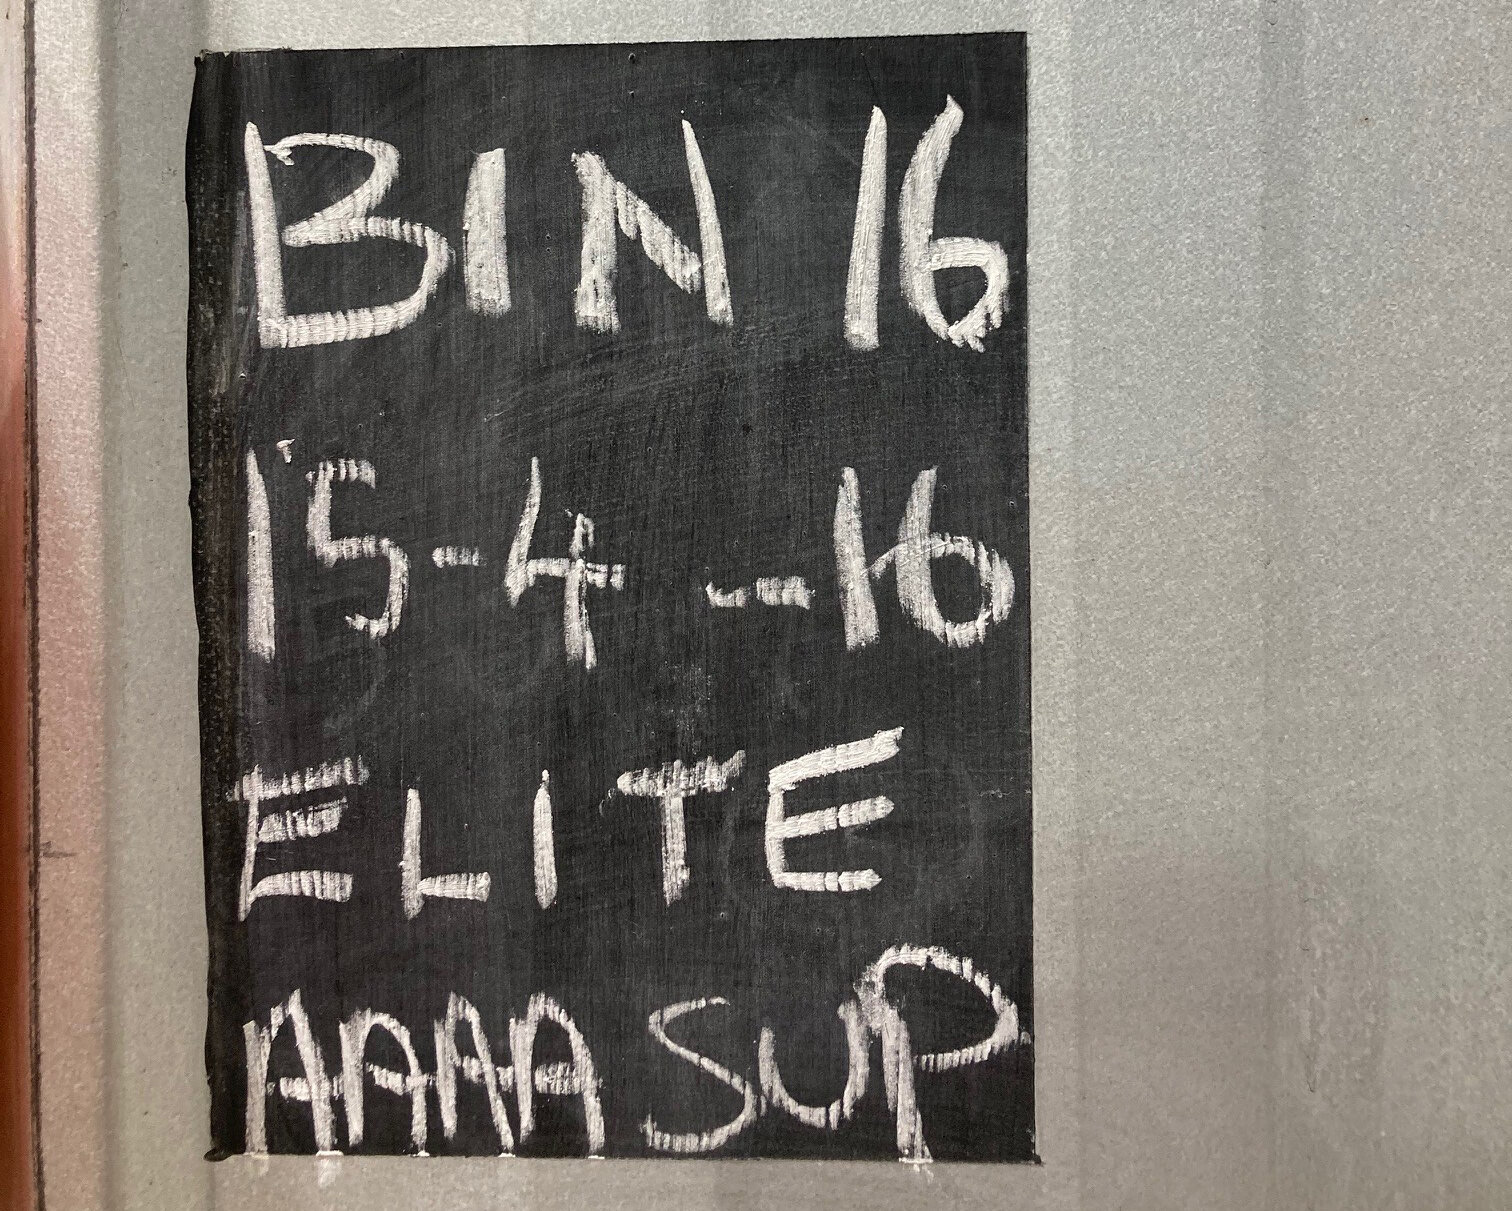 Bin 16 elite wool label